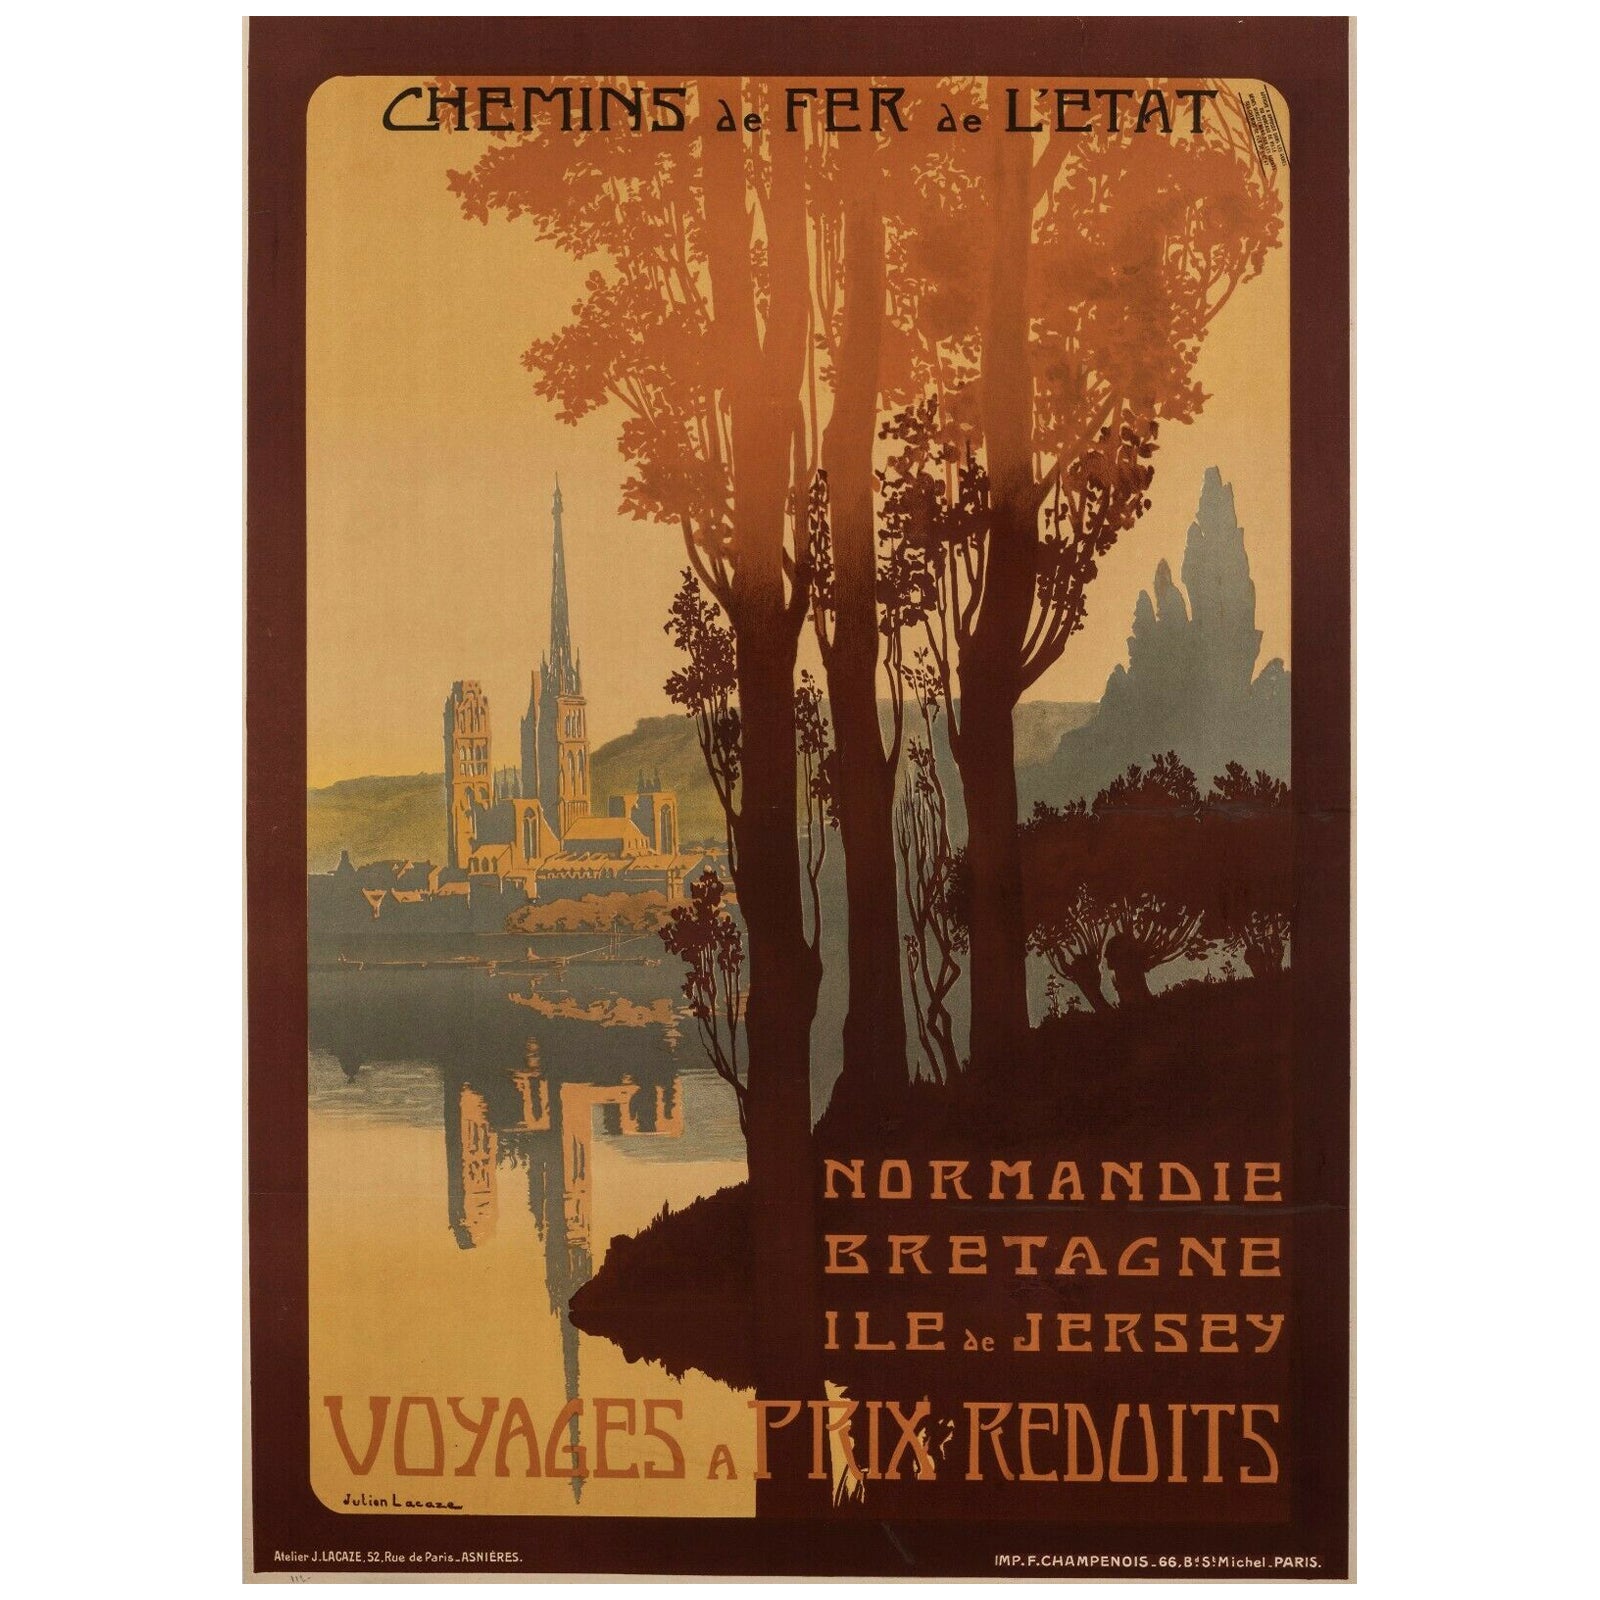 Affiche rétro originale de voyage - J. Lacaze-Normandie-Bretagne-Jersey, vers 1910